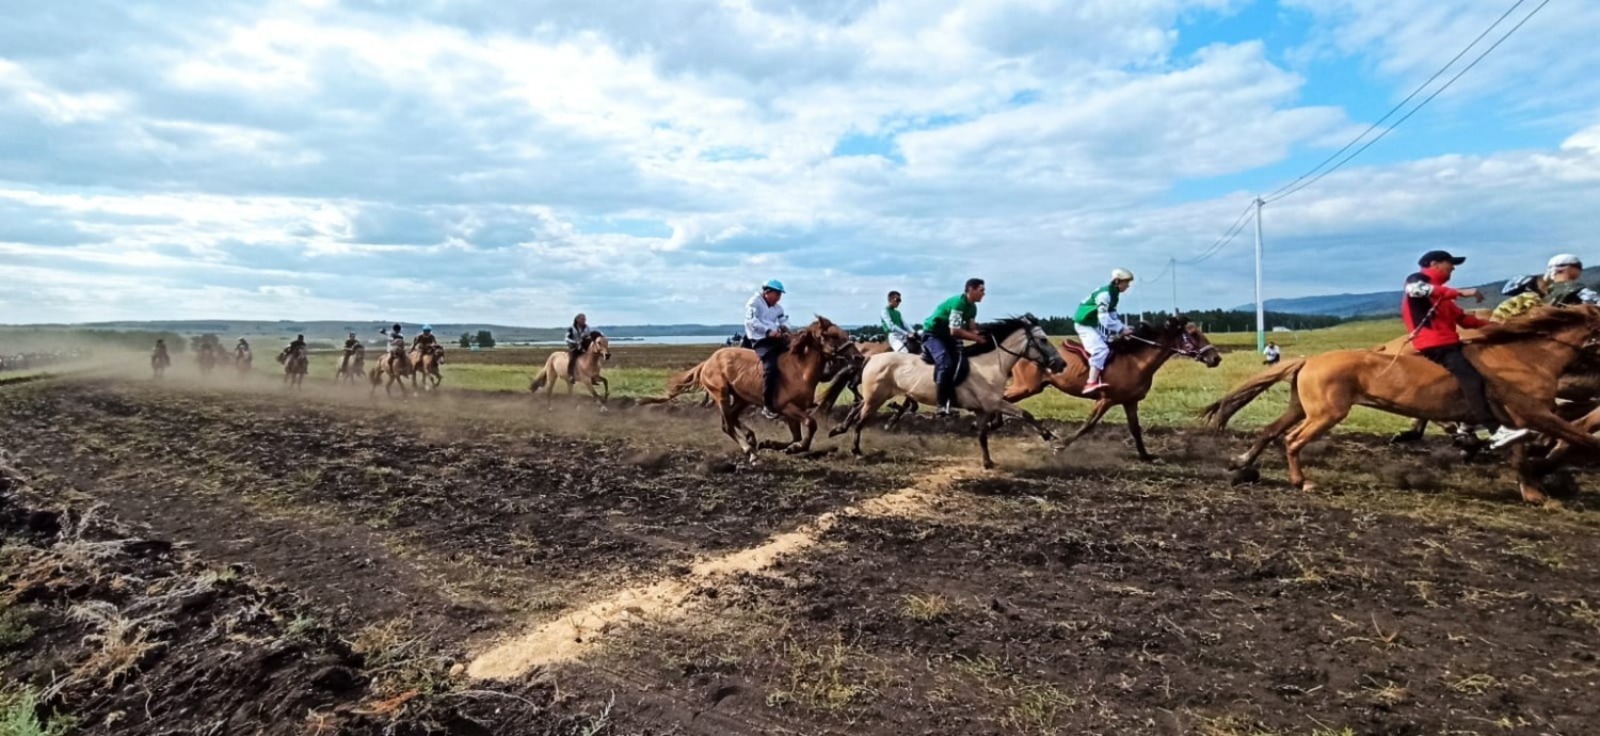 На специальном поле, где проходит фестиваль башкирской лошади, начались финальная игра "Ылак" и скачки